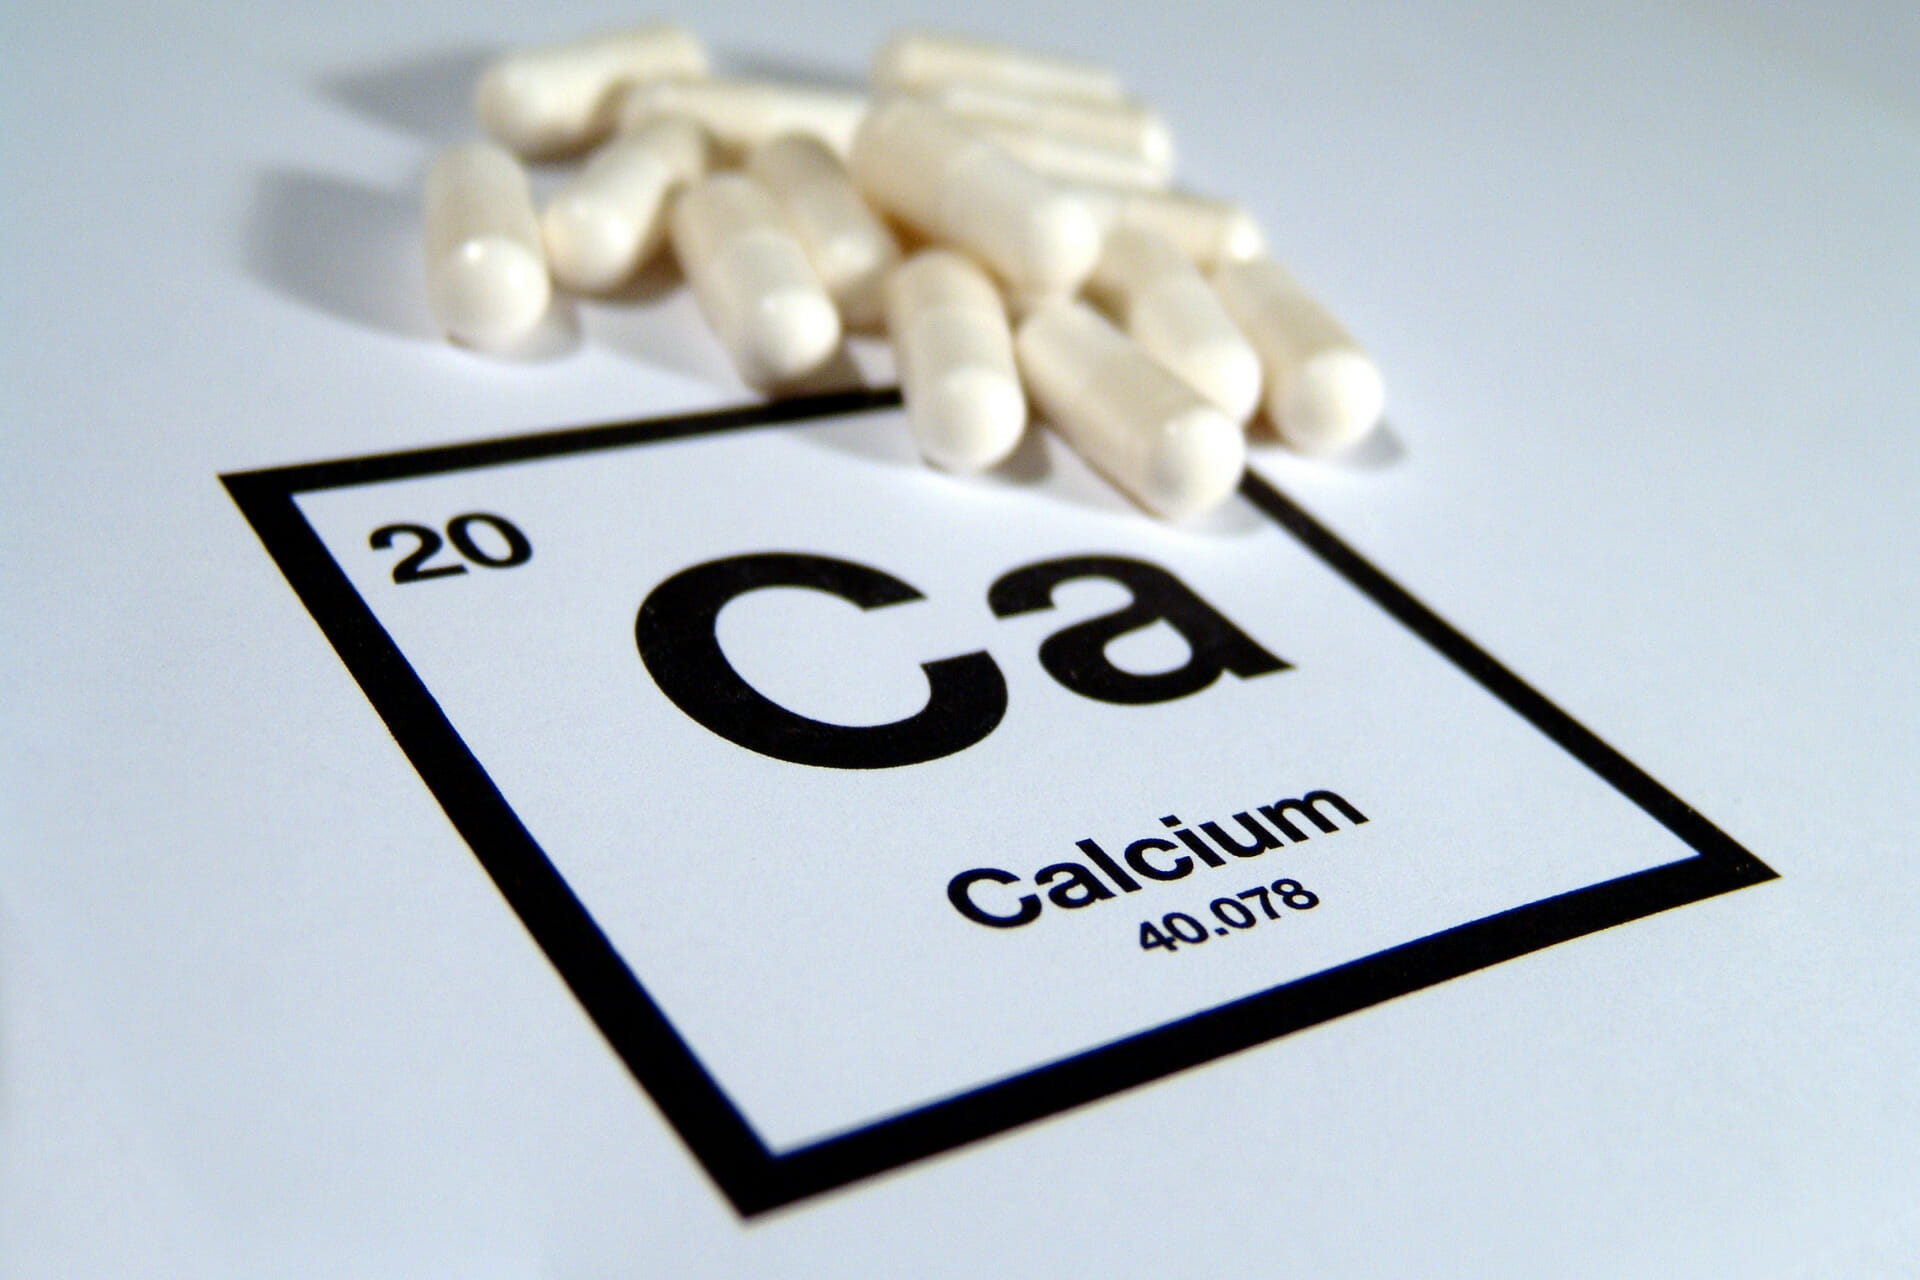 Daily Calcium Intake